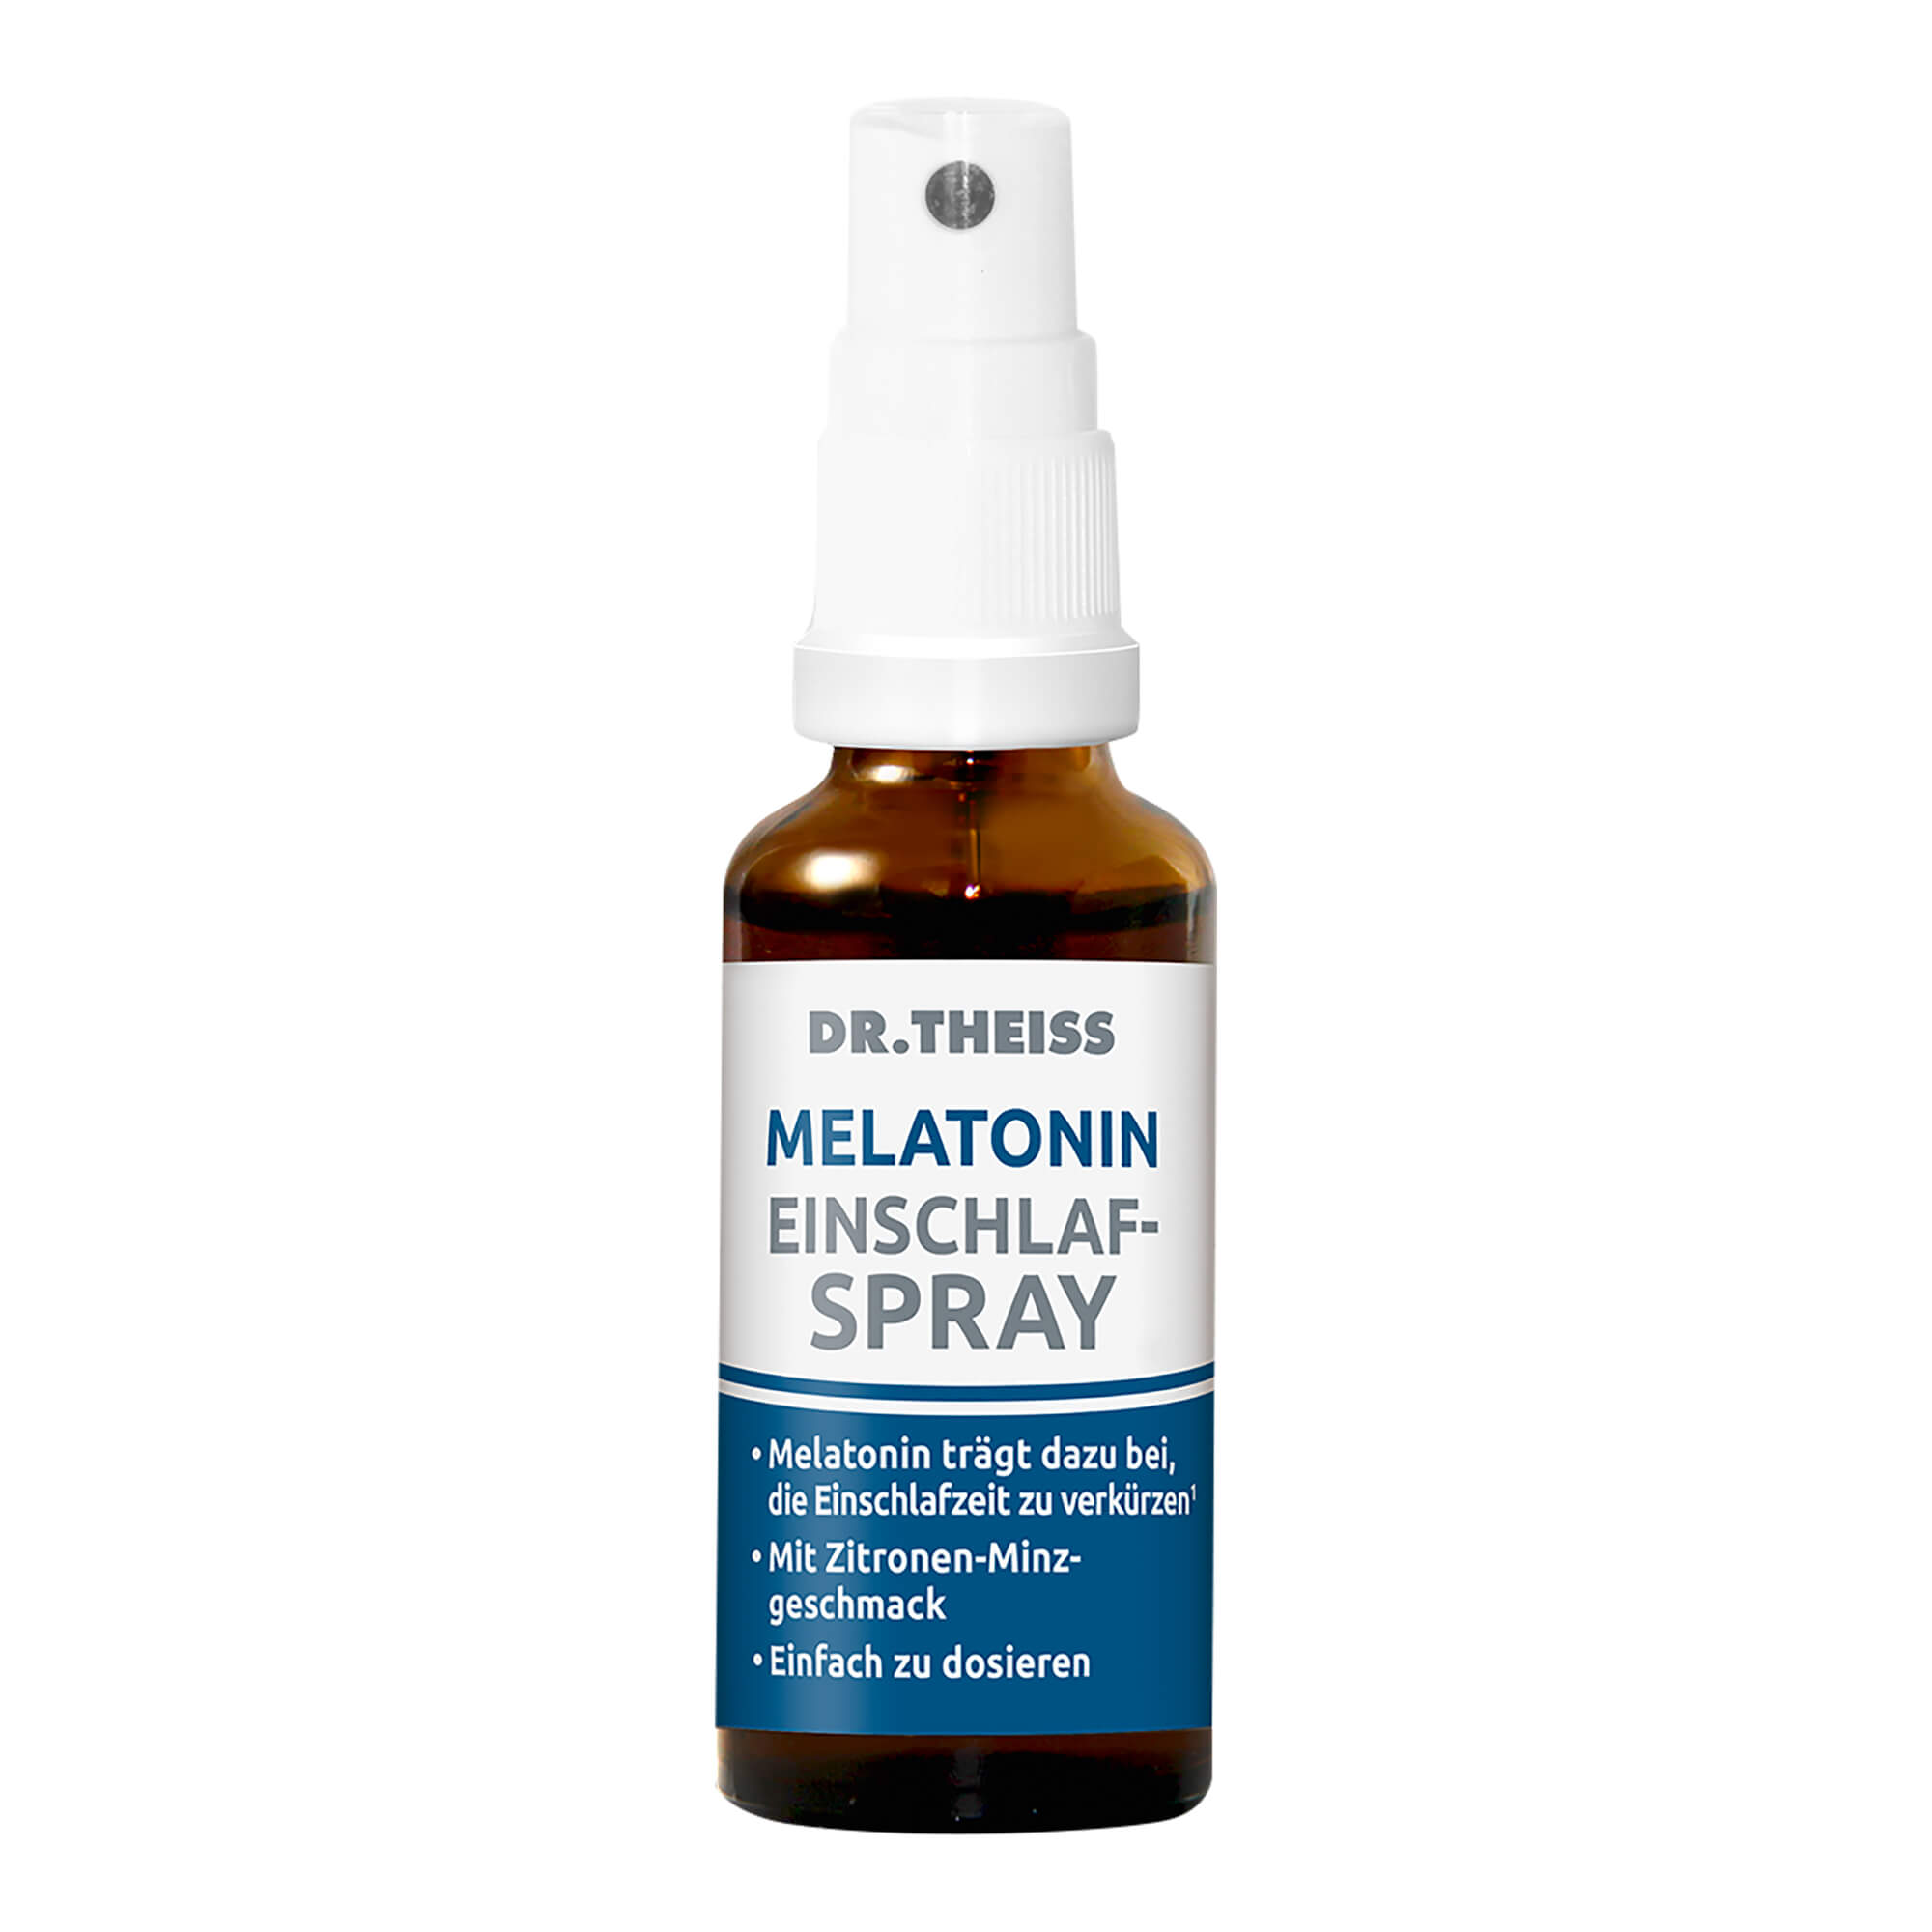 Melatonin-Spray mit Zitronen-Minzgeschmack zur Anwendung bei Einschlafstörungen. Mit Passionsblume.